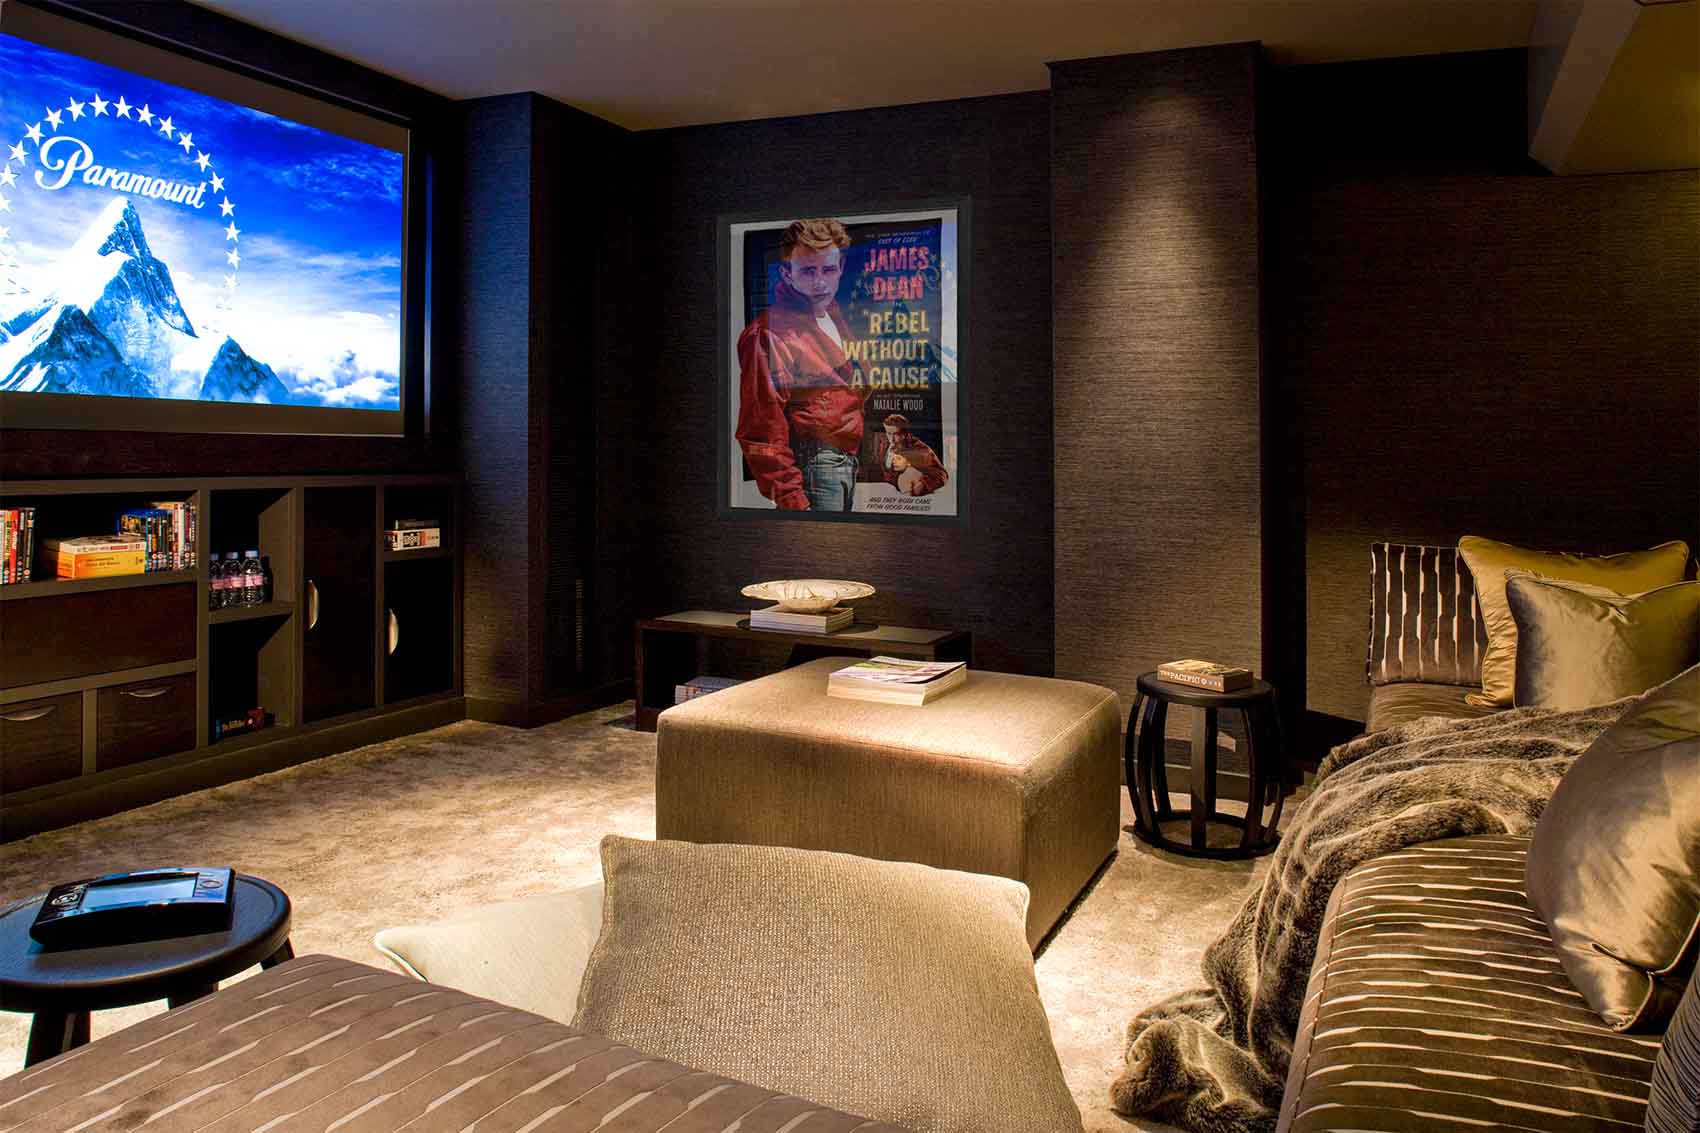 Luxury cinema room, Rene Dekker, velvet patterned upholstery, wide screen TV